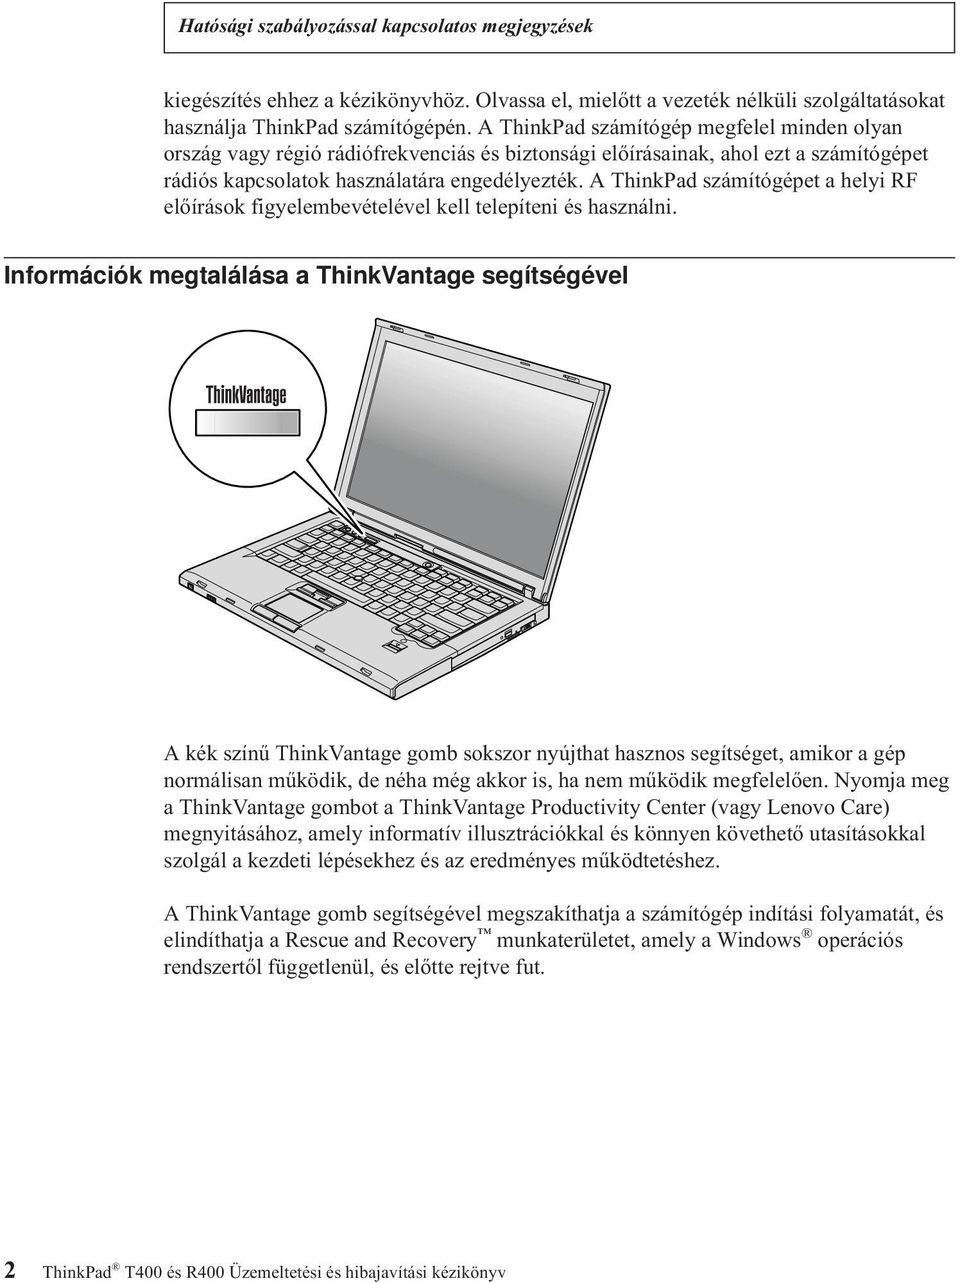 A ThinkPad számítógépet a helyi RF előírások figyelembevételével kell telepíteni és használni.